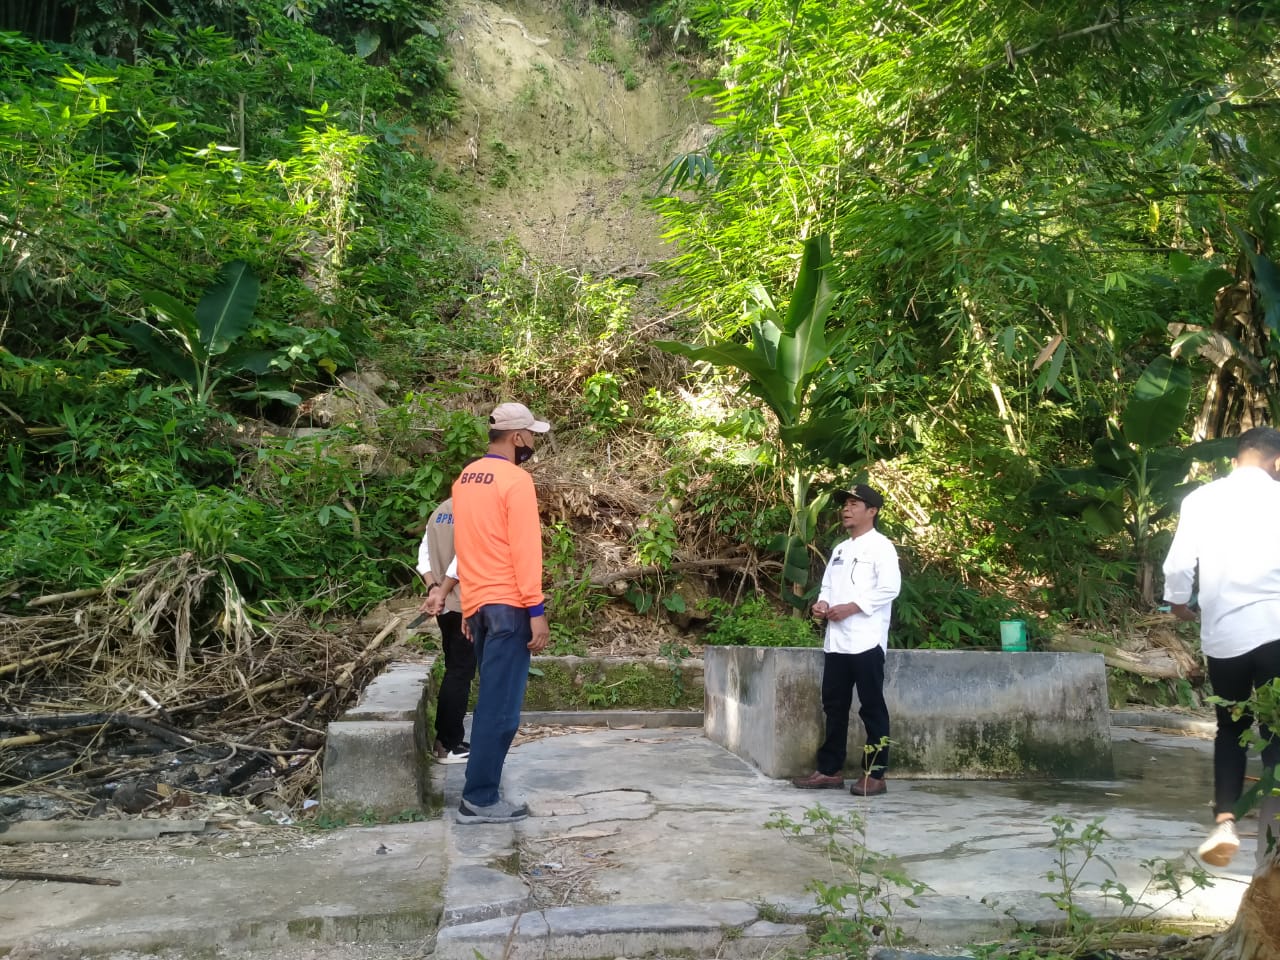 Lurah Kolese, Muhulisi menerangkan lokasi tebing rawan longsor ke personel BPBD Baubau, Jum'at (9/9). Lokasi itu menjadi tempat lalu-lalang nelayan setempat. (Foto Texandi)